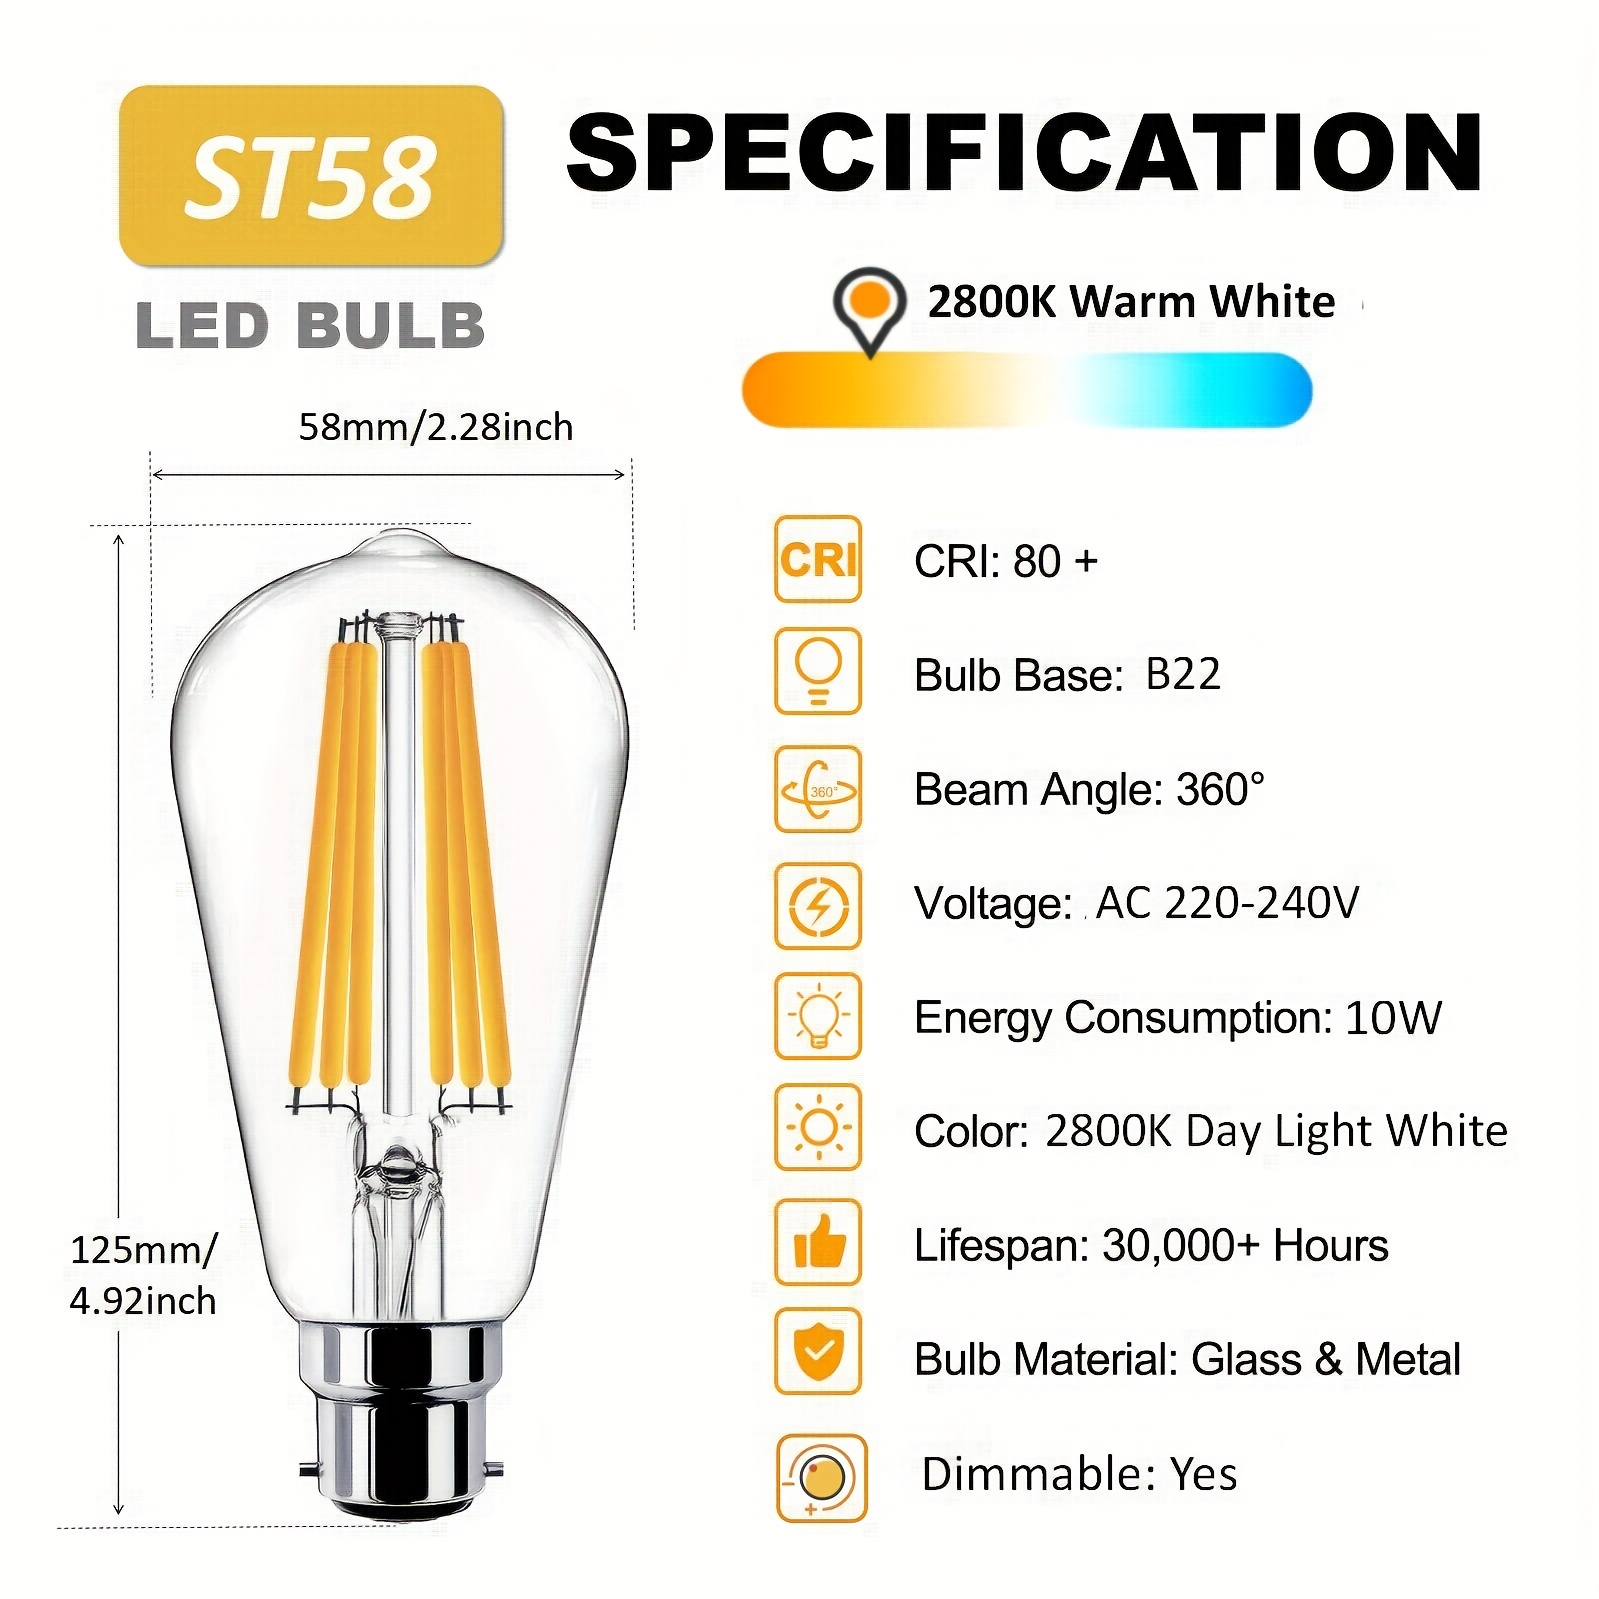 Ampoule LED B22 baïonnette 10W blanc chaud